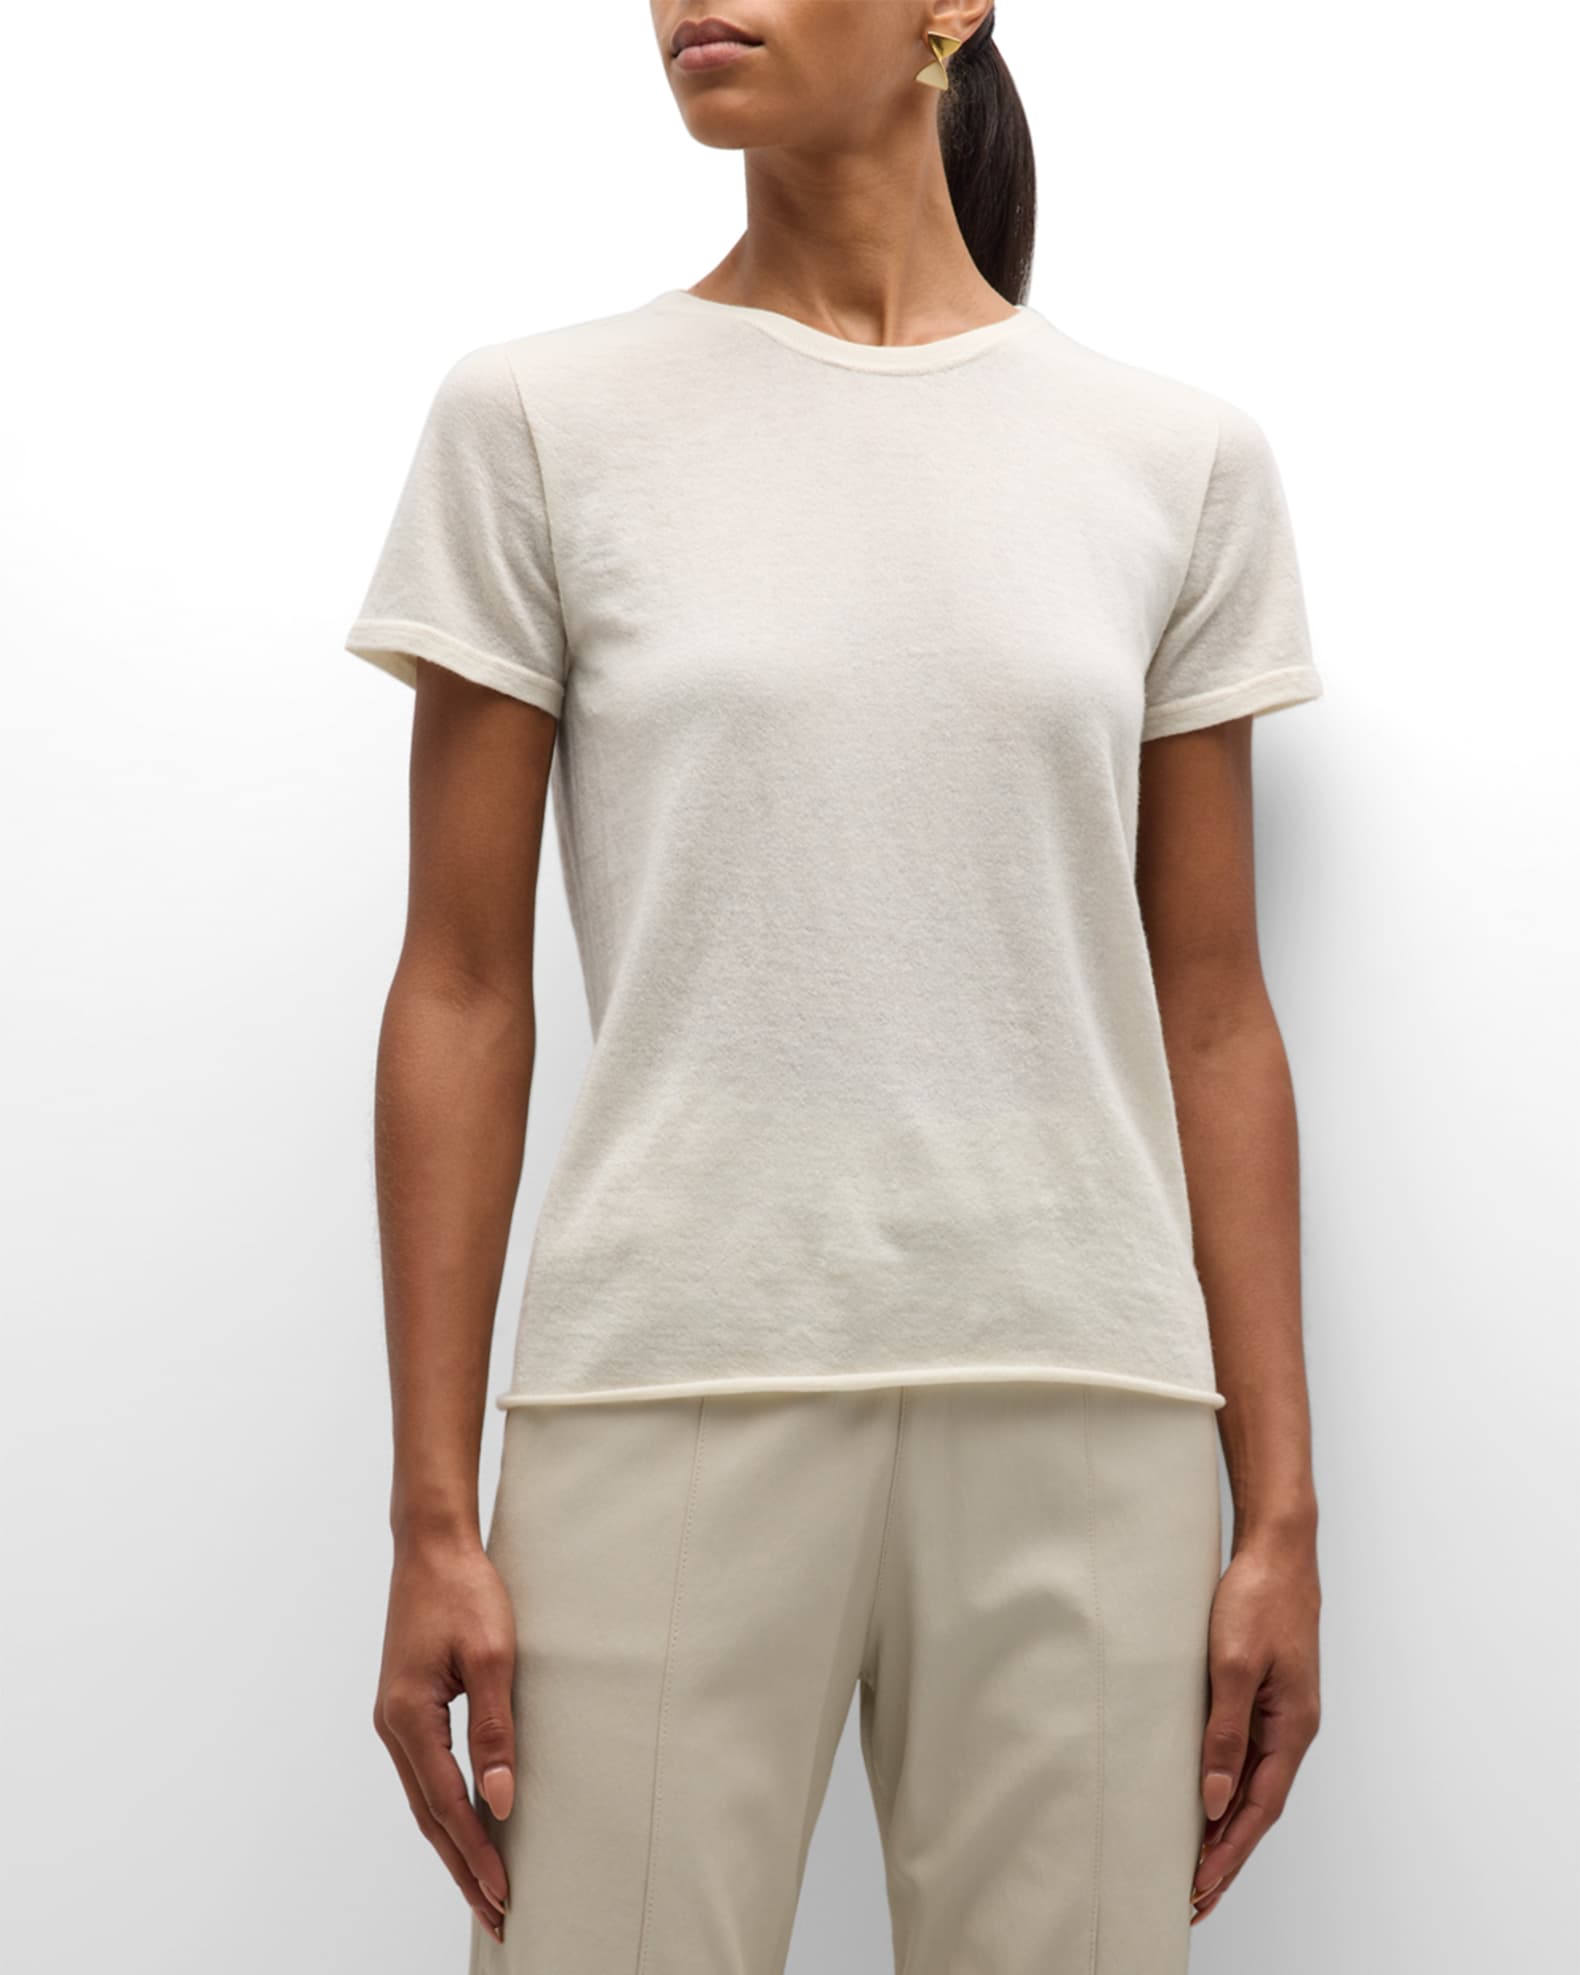 Louis Vuitton D-Ring Detail Cashmere Pullover Milk White. Size L0